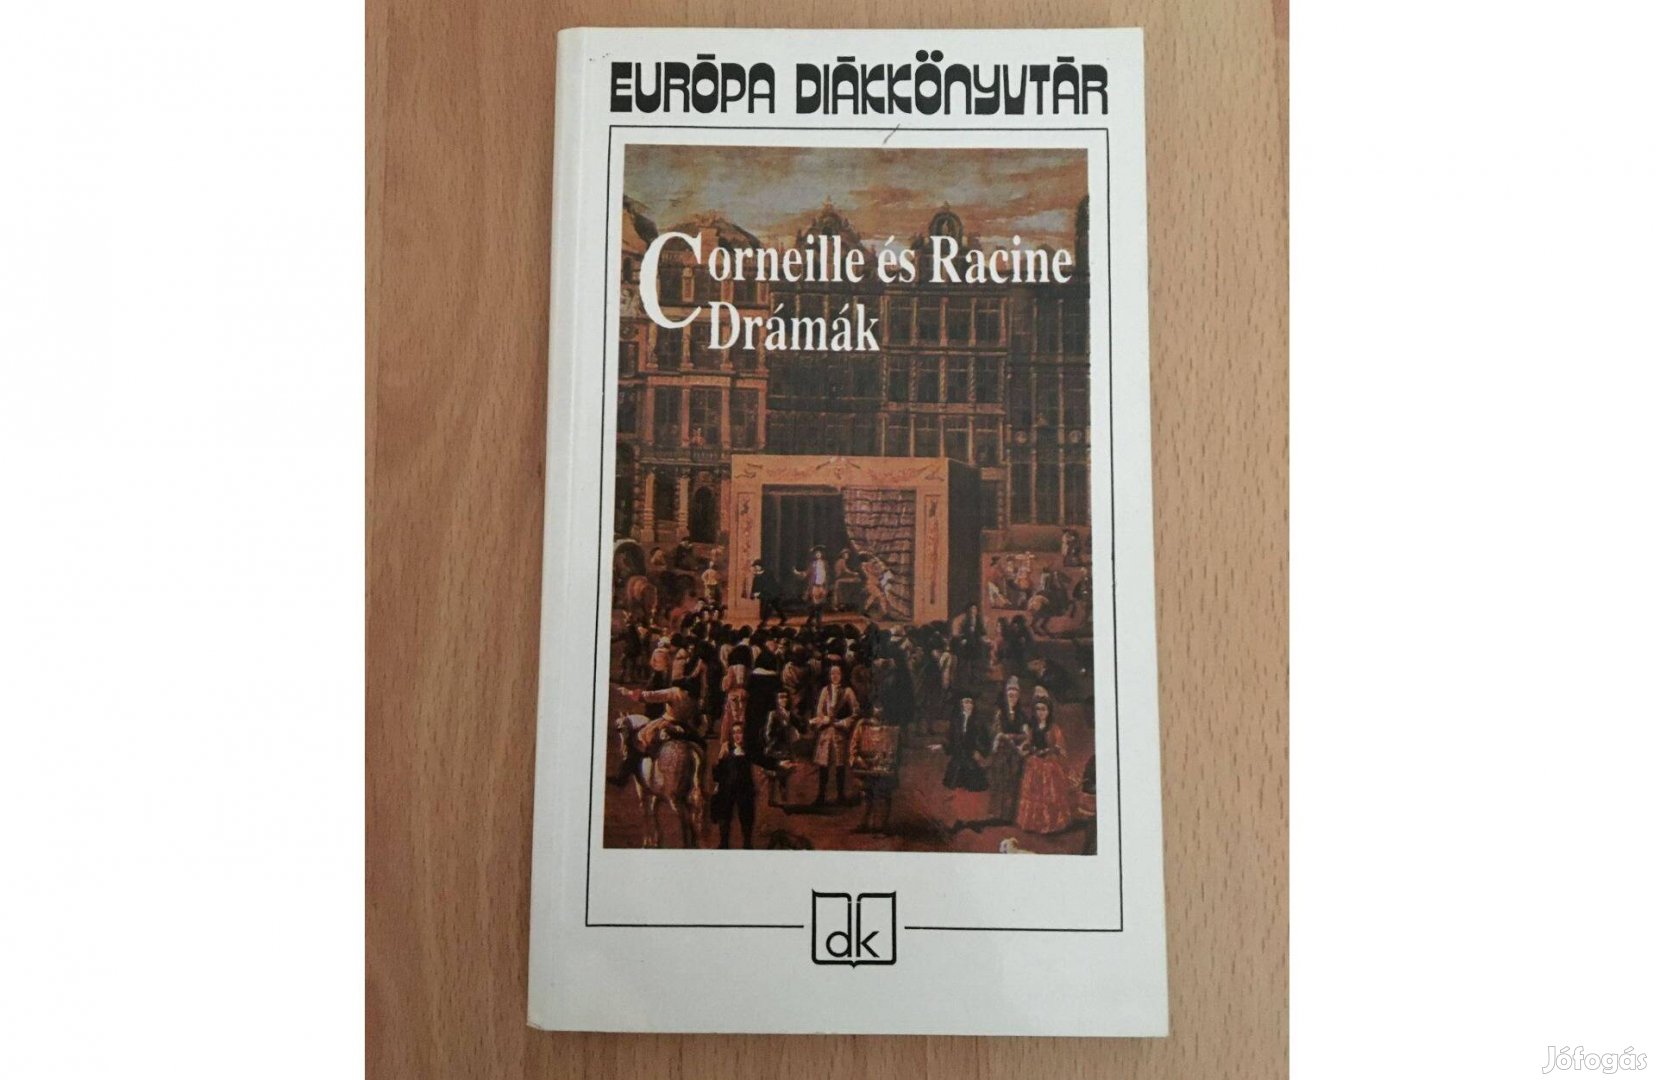 Corneille és Racine Drámák c. könyv (Európa Diákkönyvtár sorozat)